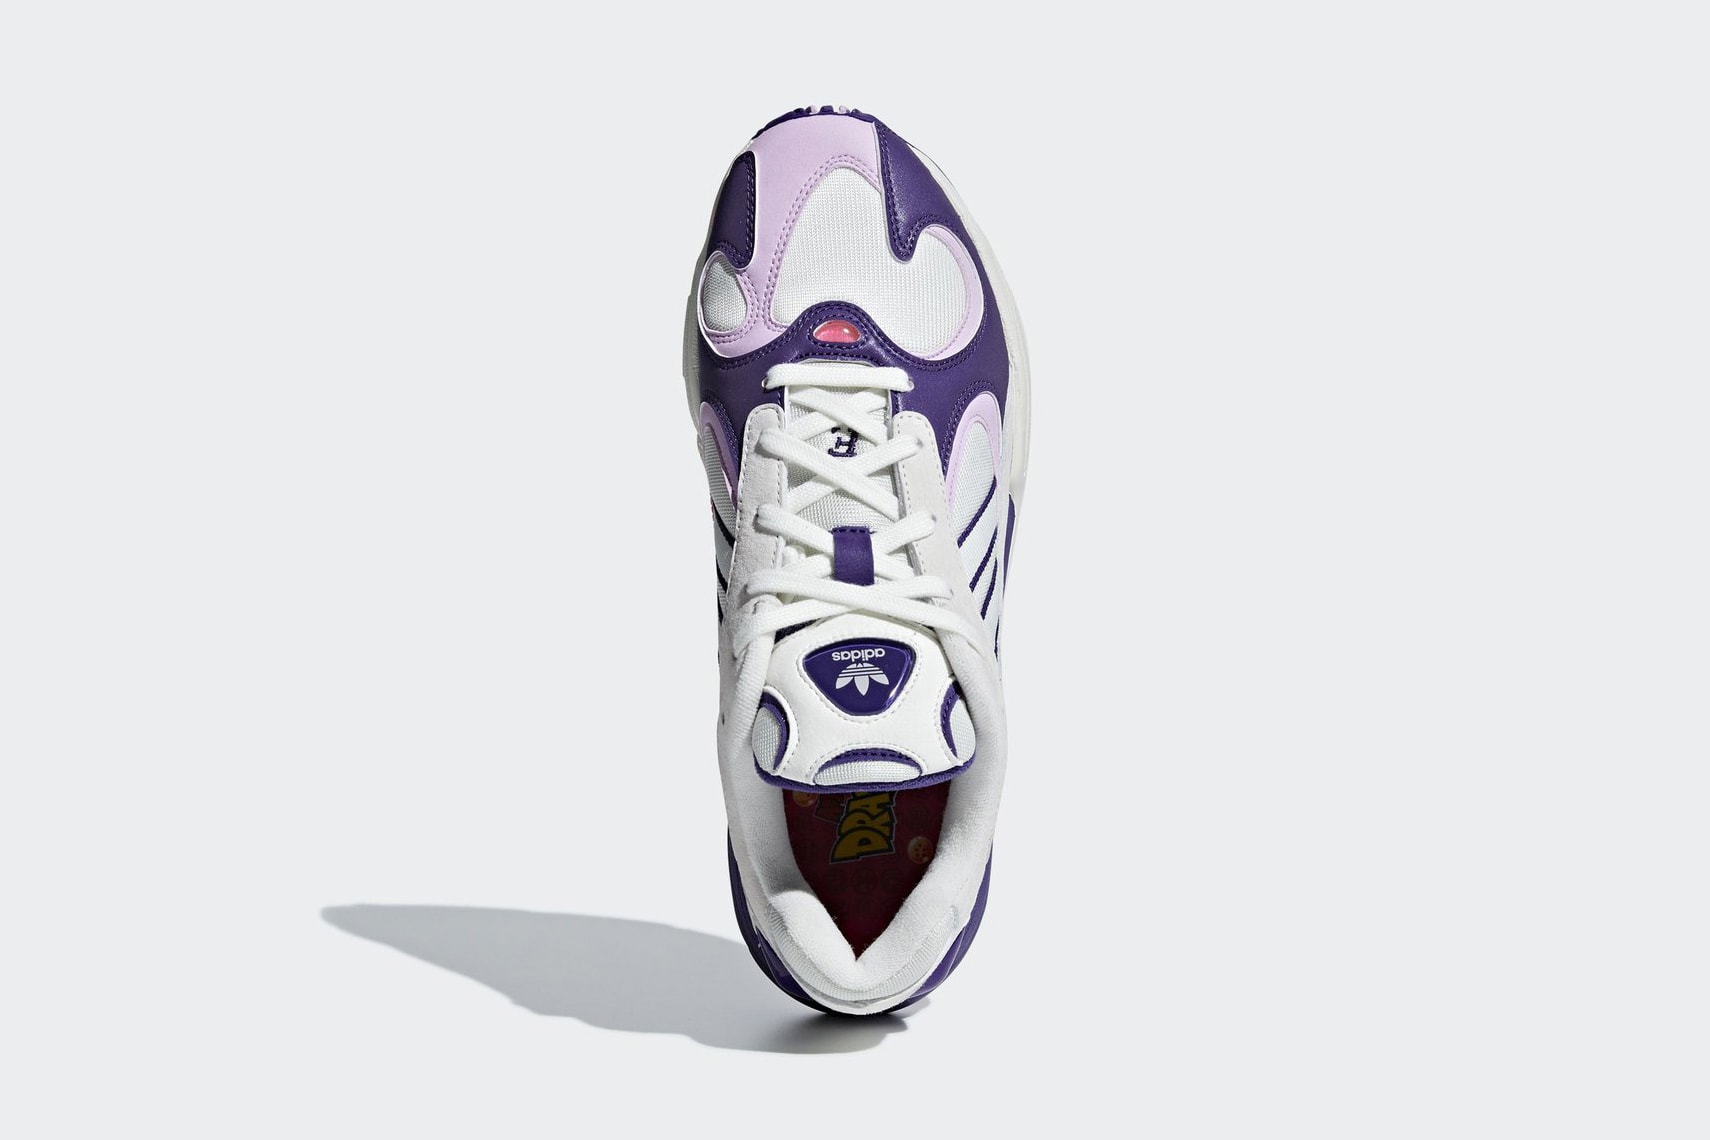 dragon ball z adidas collab yung 1 frieza purple white zx500 rum young goku